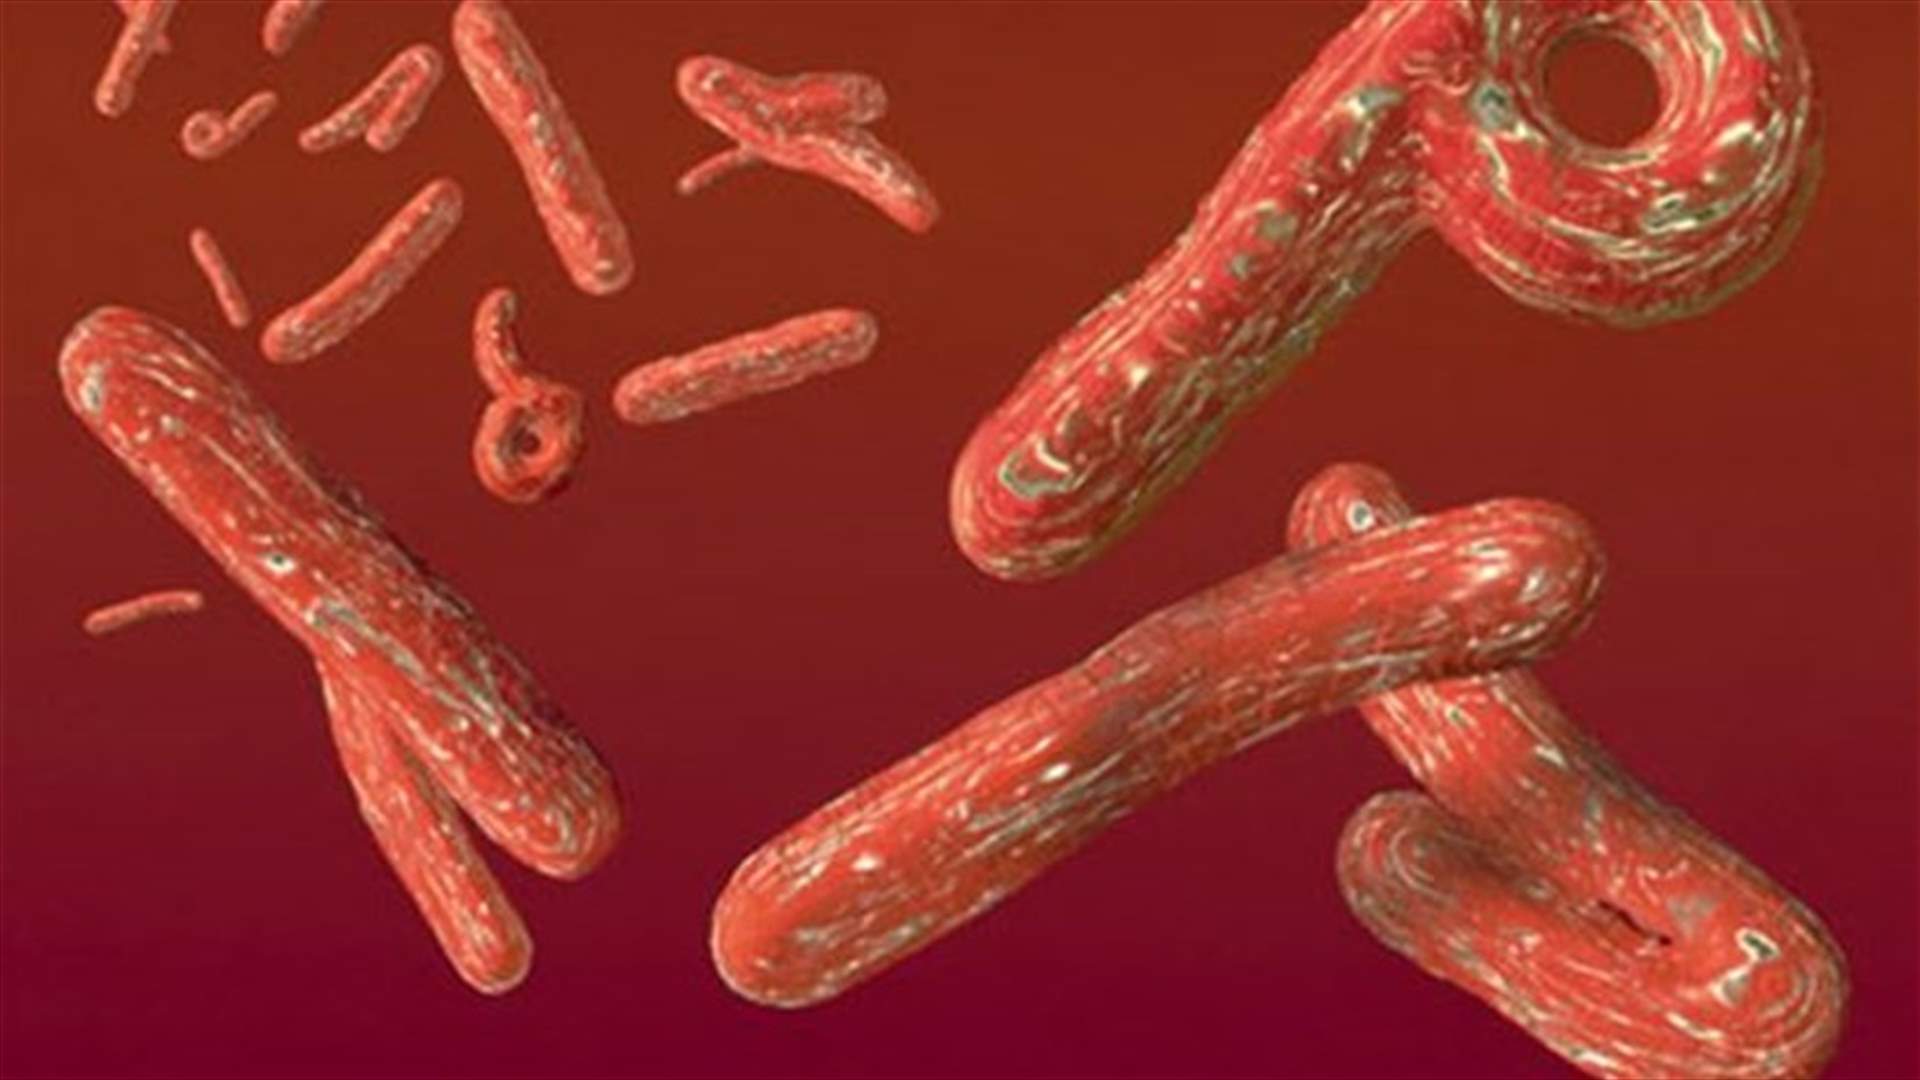 إصابة كبير اطباء مكافحة فيروس الايبولا في سيراليون بالمرض